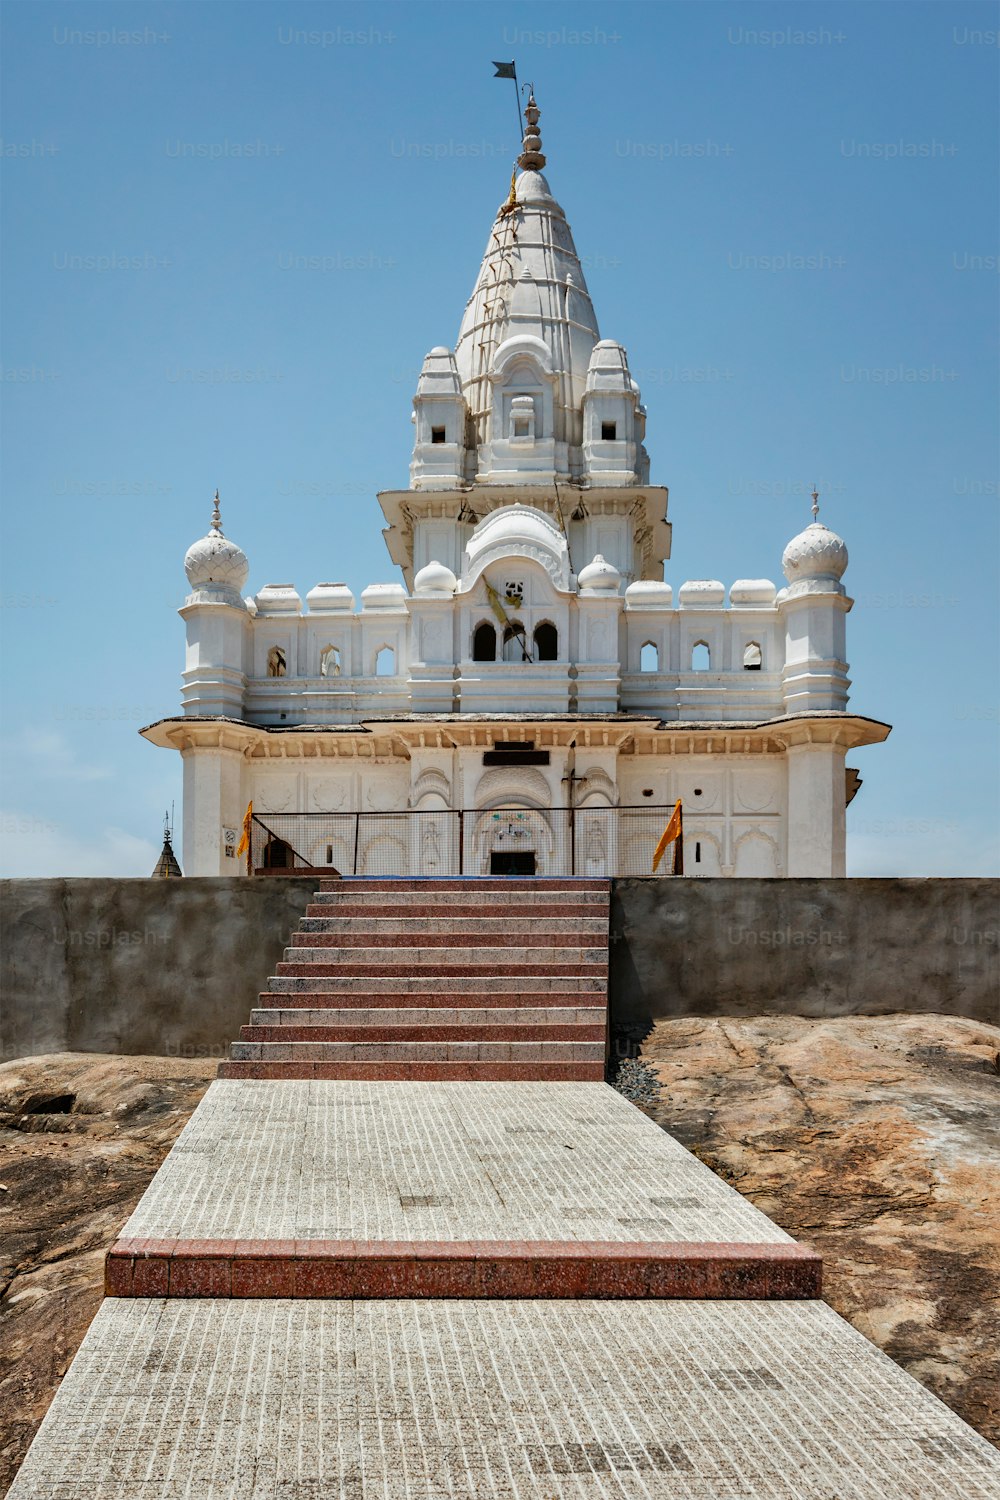 Sonagiri Jain Temples complex - important religious and pilgrimage site, Madhya Pradesh state, India